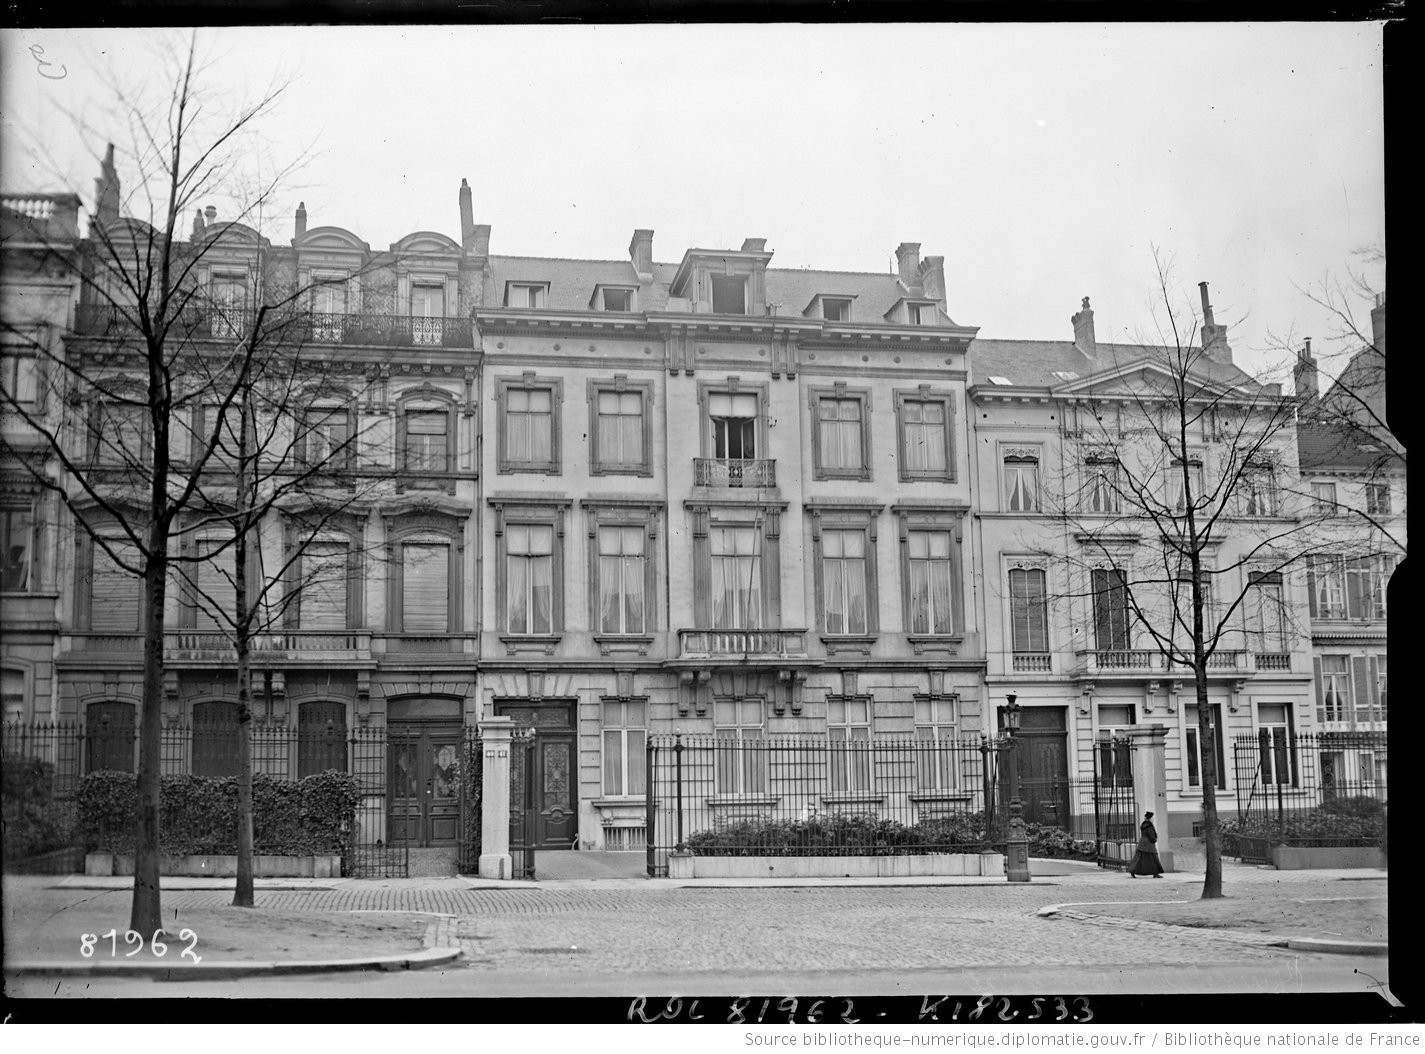 Photographie du bâtiment occupé par l'ambassade de France à Bruxelles